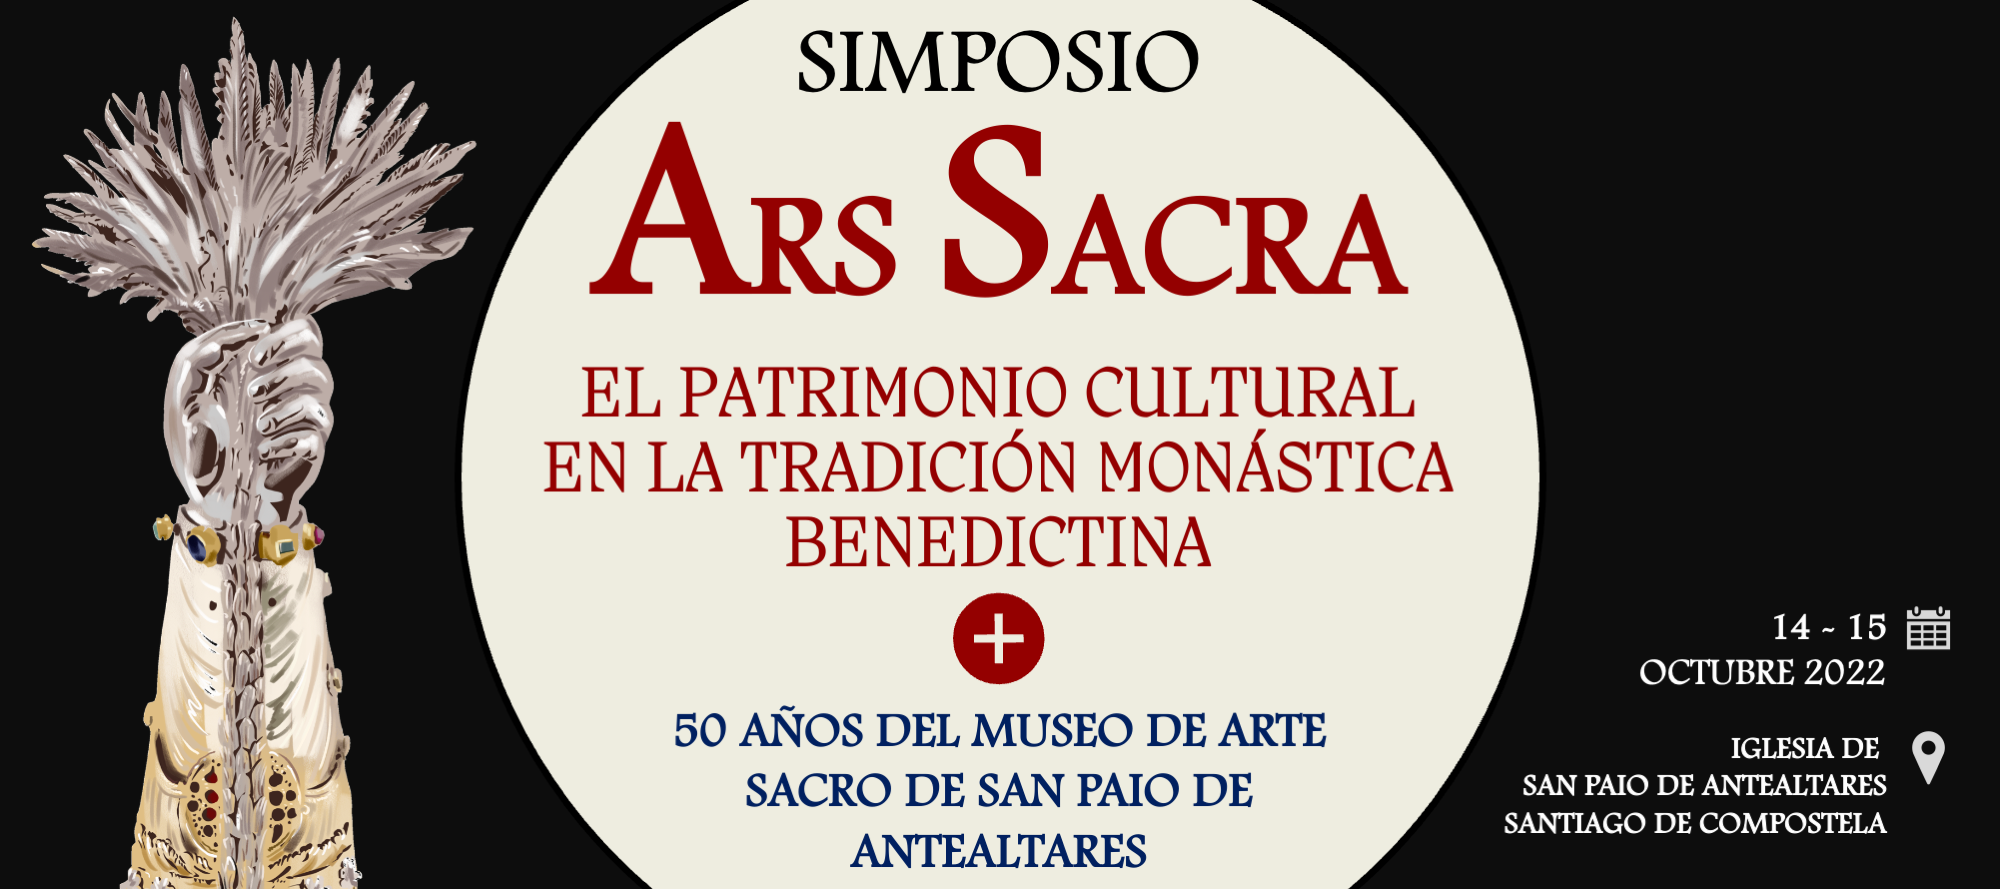 El Monasterio de San Paio organiza un simposio para conmemorar el 50 aniversario de su museo